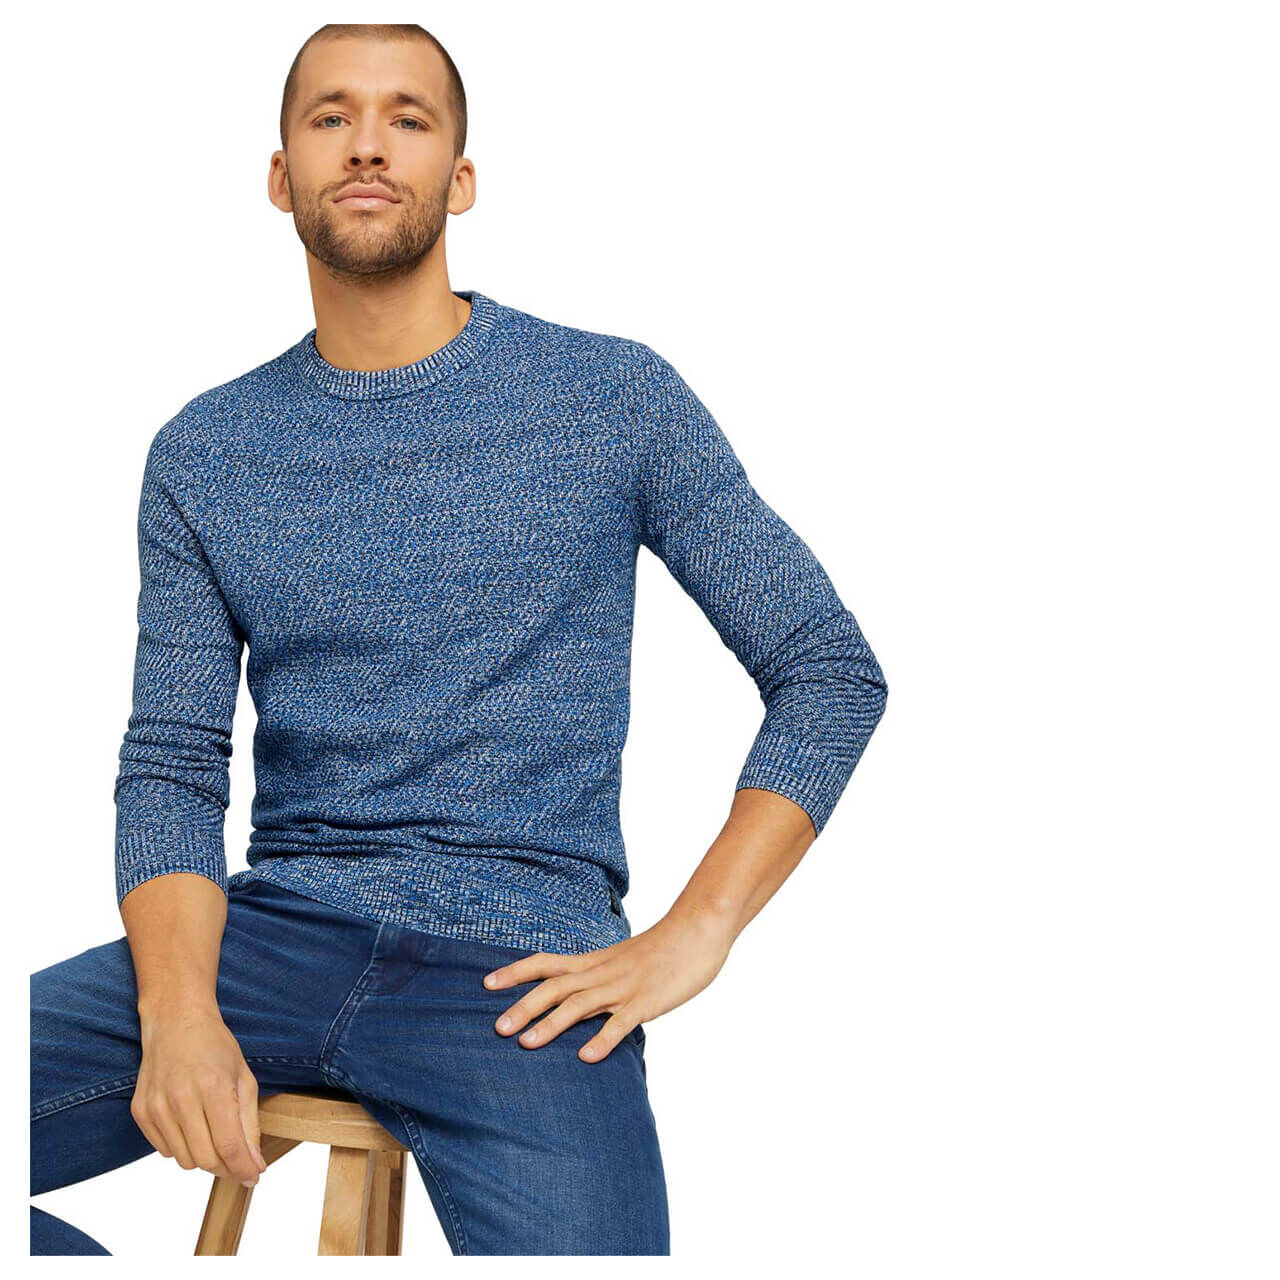 Tom Tailor Structured Basic Sweater Pullover für Herren in Dunkelblau meliert, FarbNr.: 25837